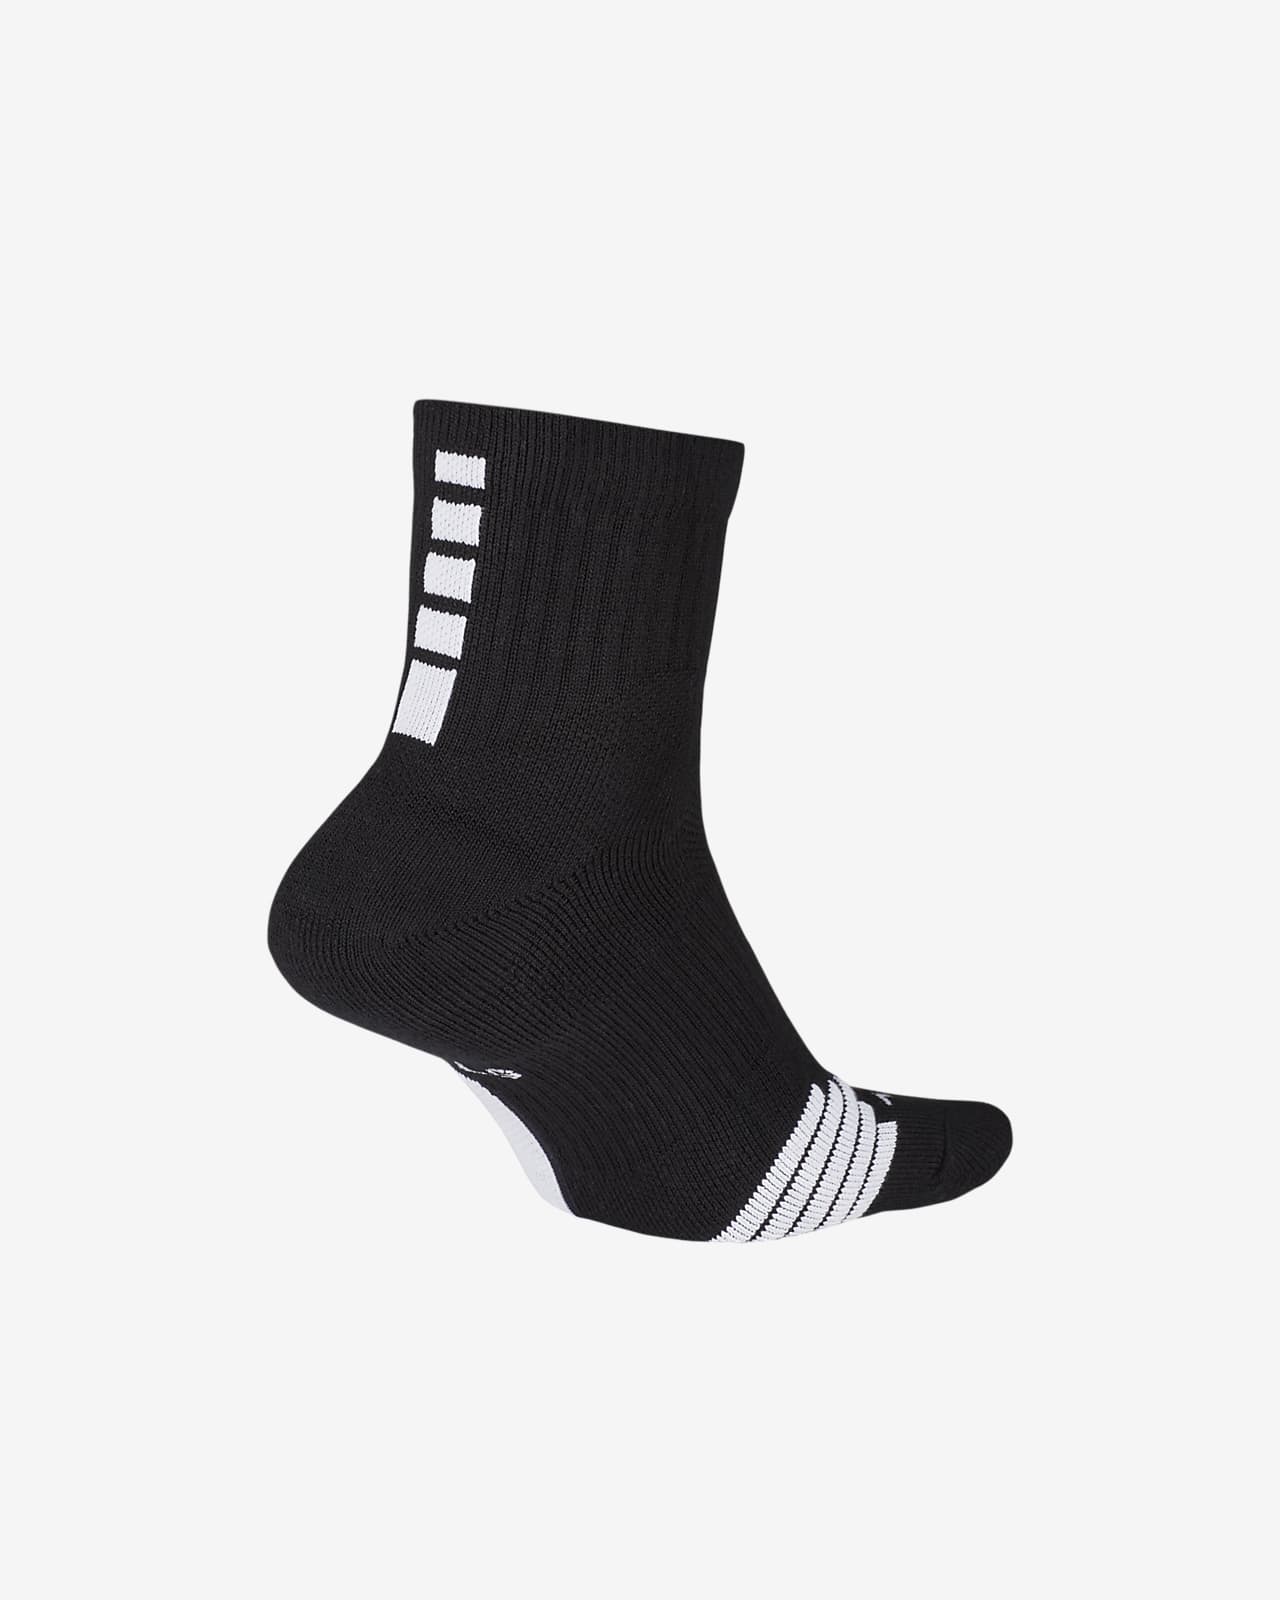 nike elite socks canada